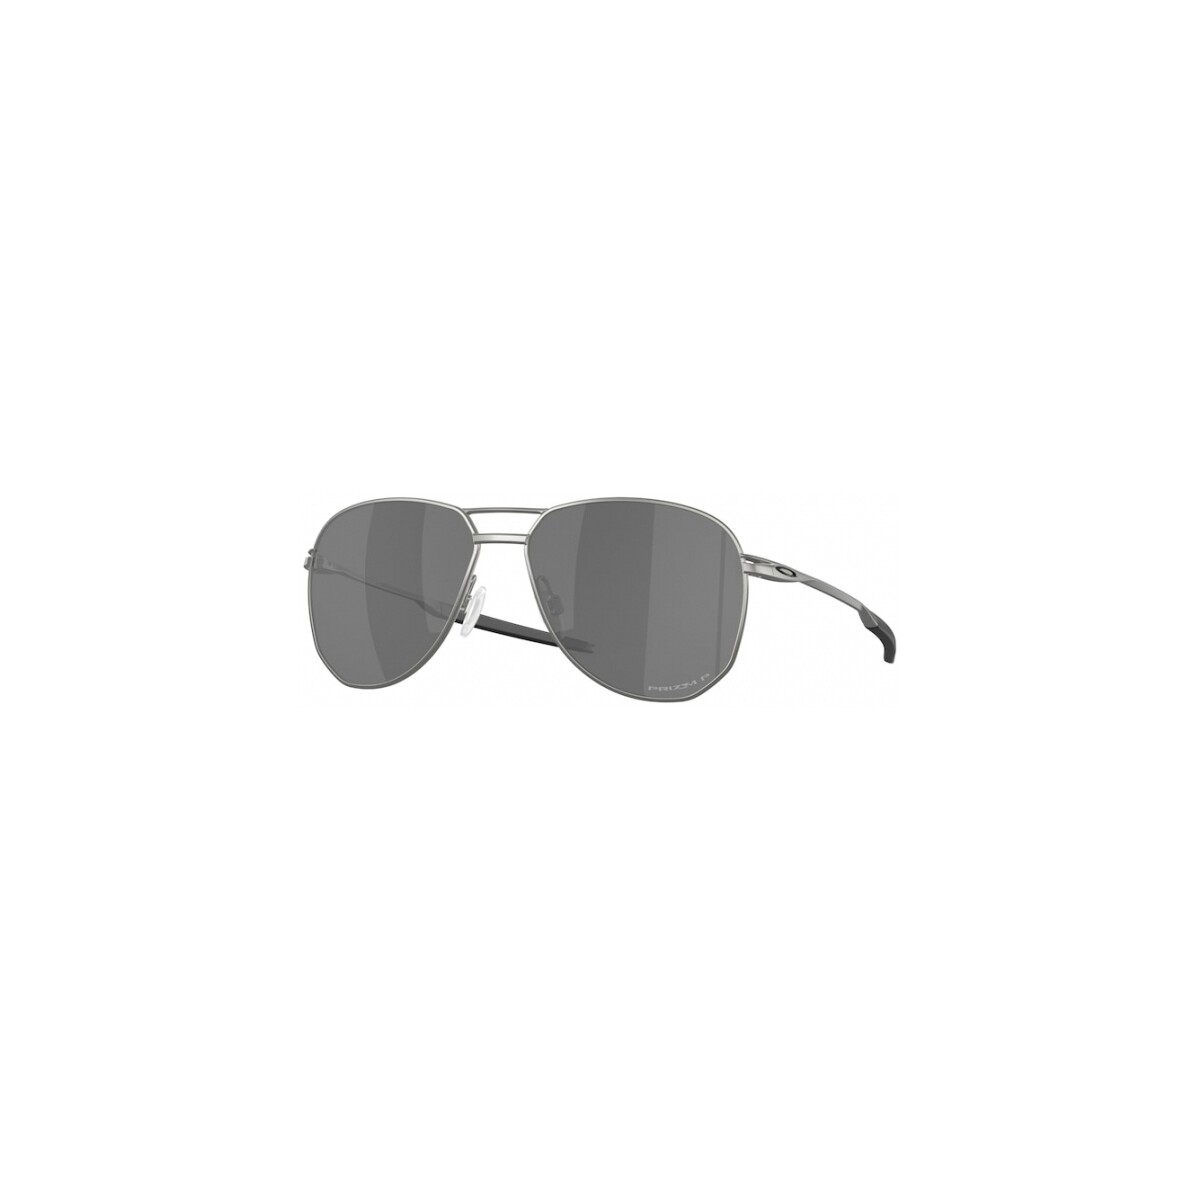 Orologi & Gioielli Uomo Occhiali da sole Oakley OO6050 Contrail ti Occhiali da sole, Grigio/Nero, 57 mm Grigio